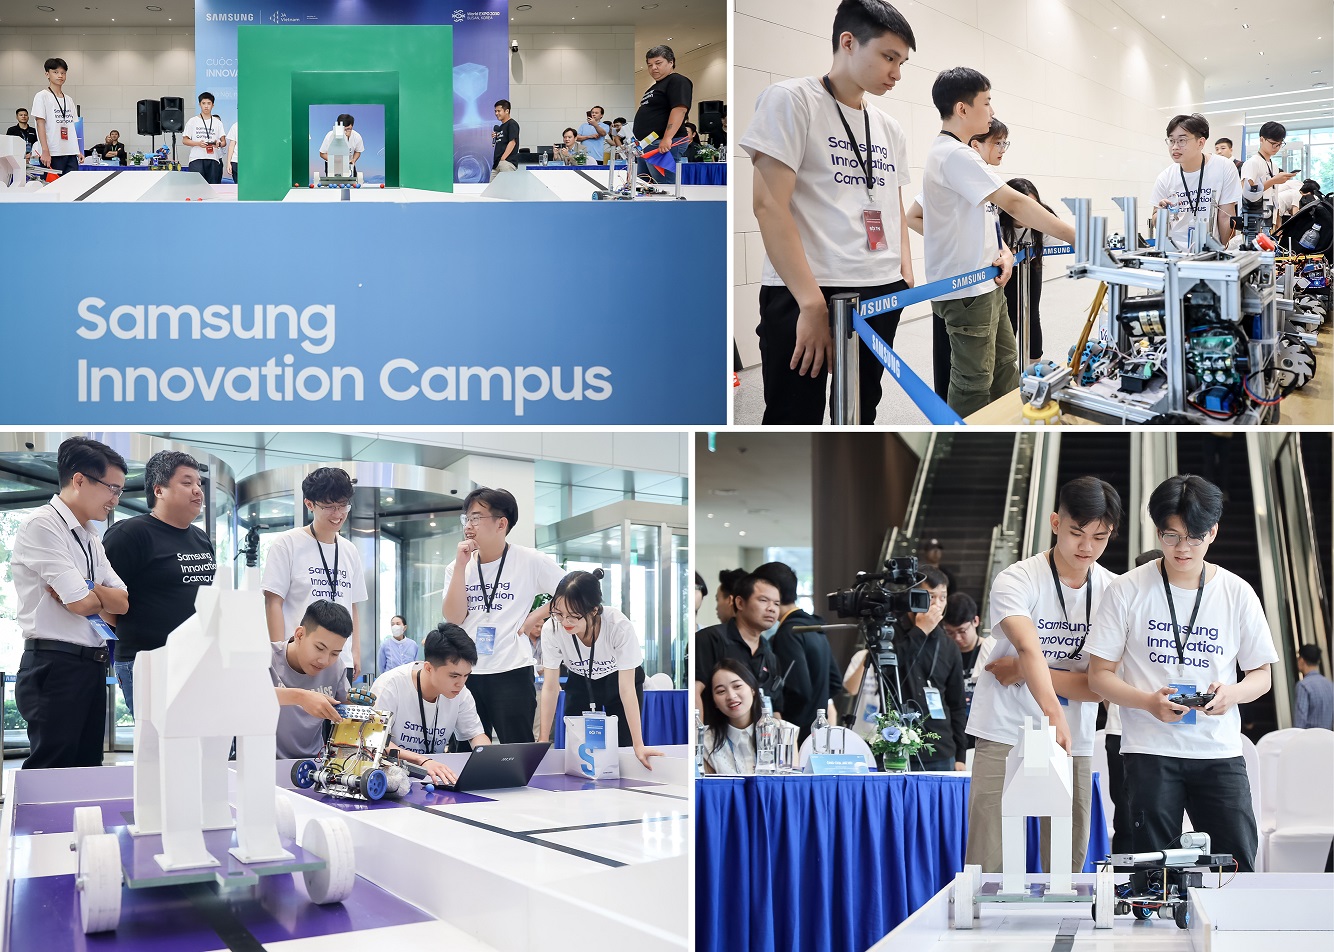 Samsung Innovation Campus 2023-2024 sẽ đào tạo 6.000 nhân tài công nghệ mới - Hinh 4 Tu 2019 toi nay Samsung Innovation Campus da dao tao cong nghe cho 6.400 hoc sinh sinh vien va giao vien tai Viet Nam 1